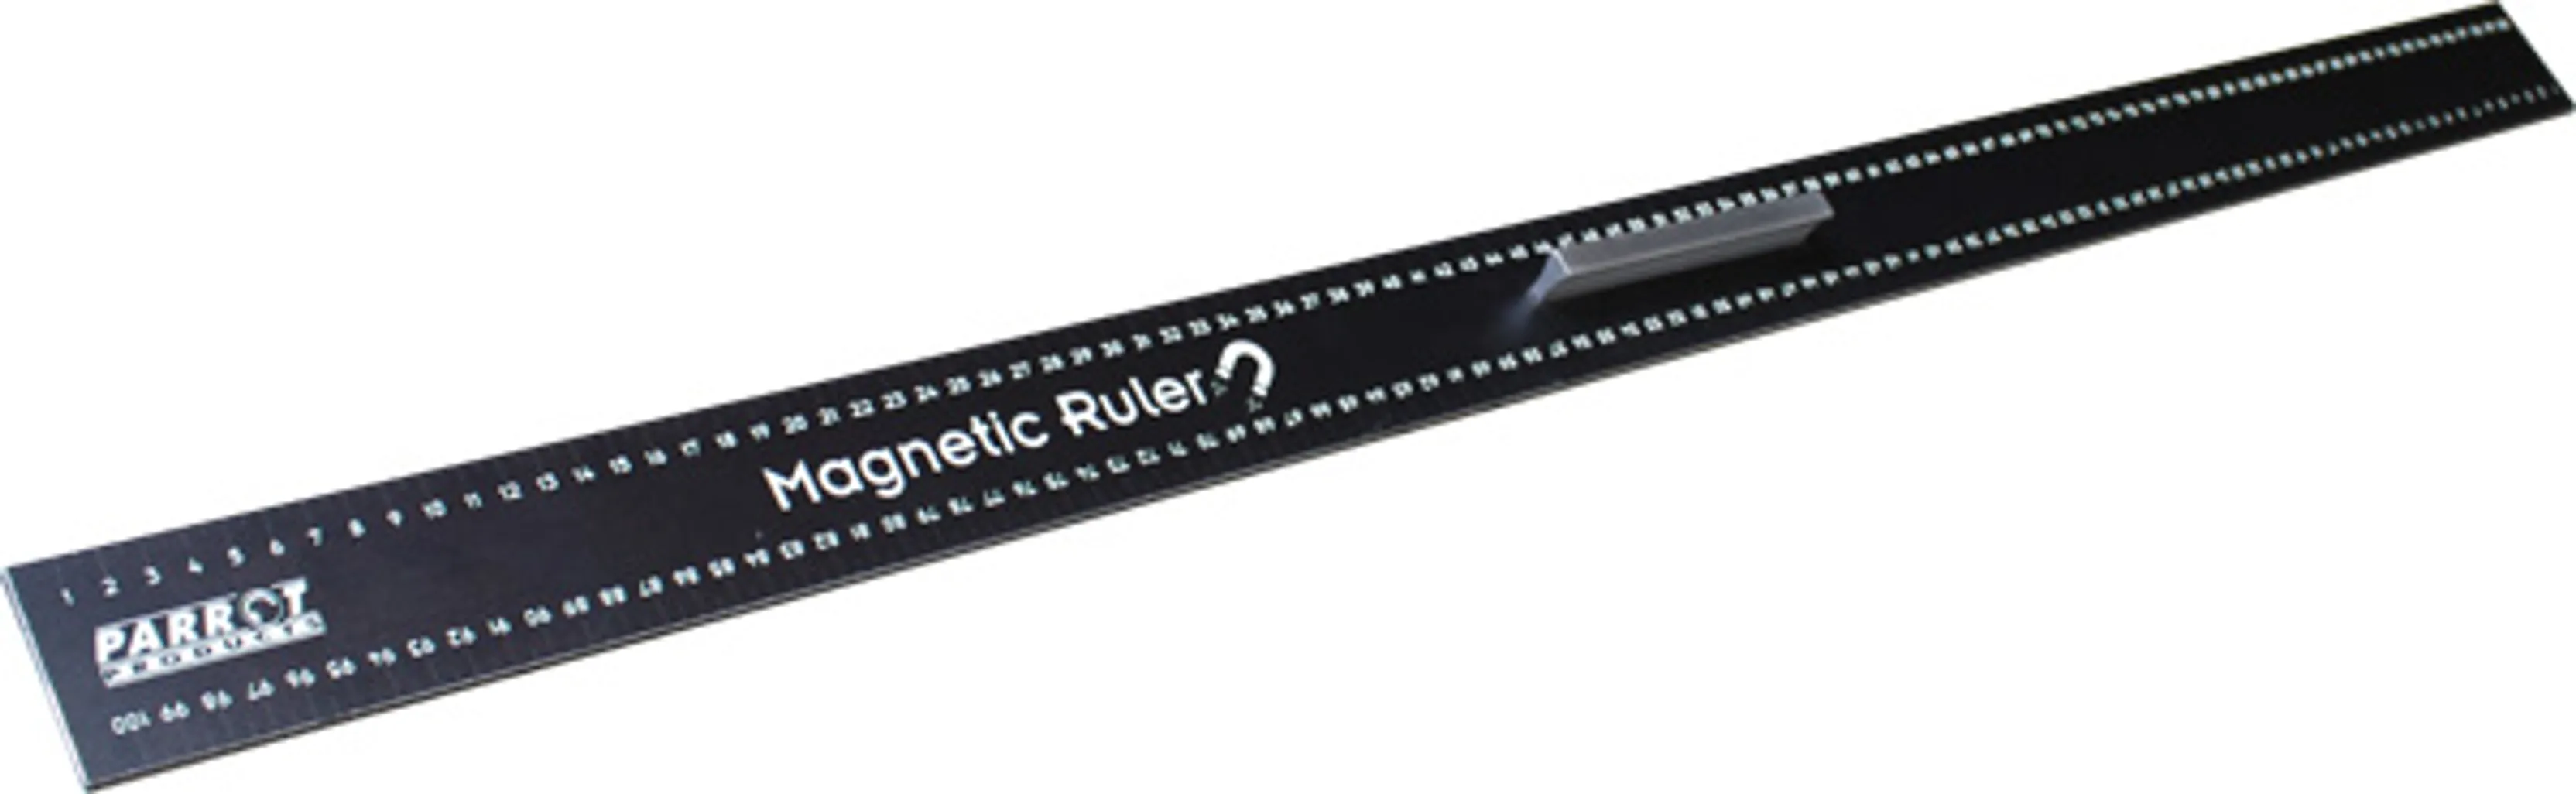 magnetic whiteboard ruler